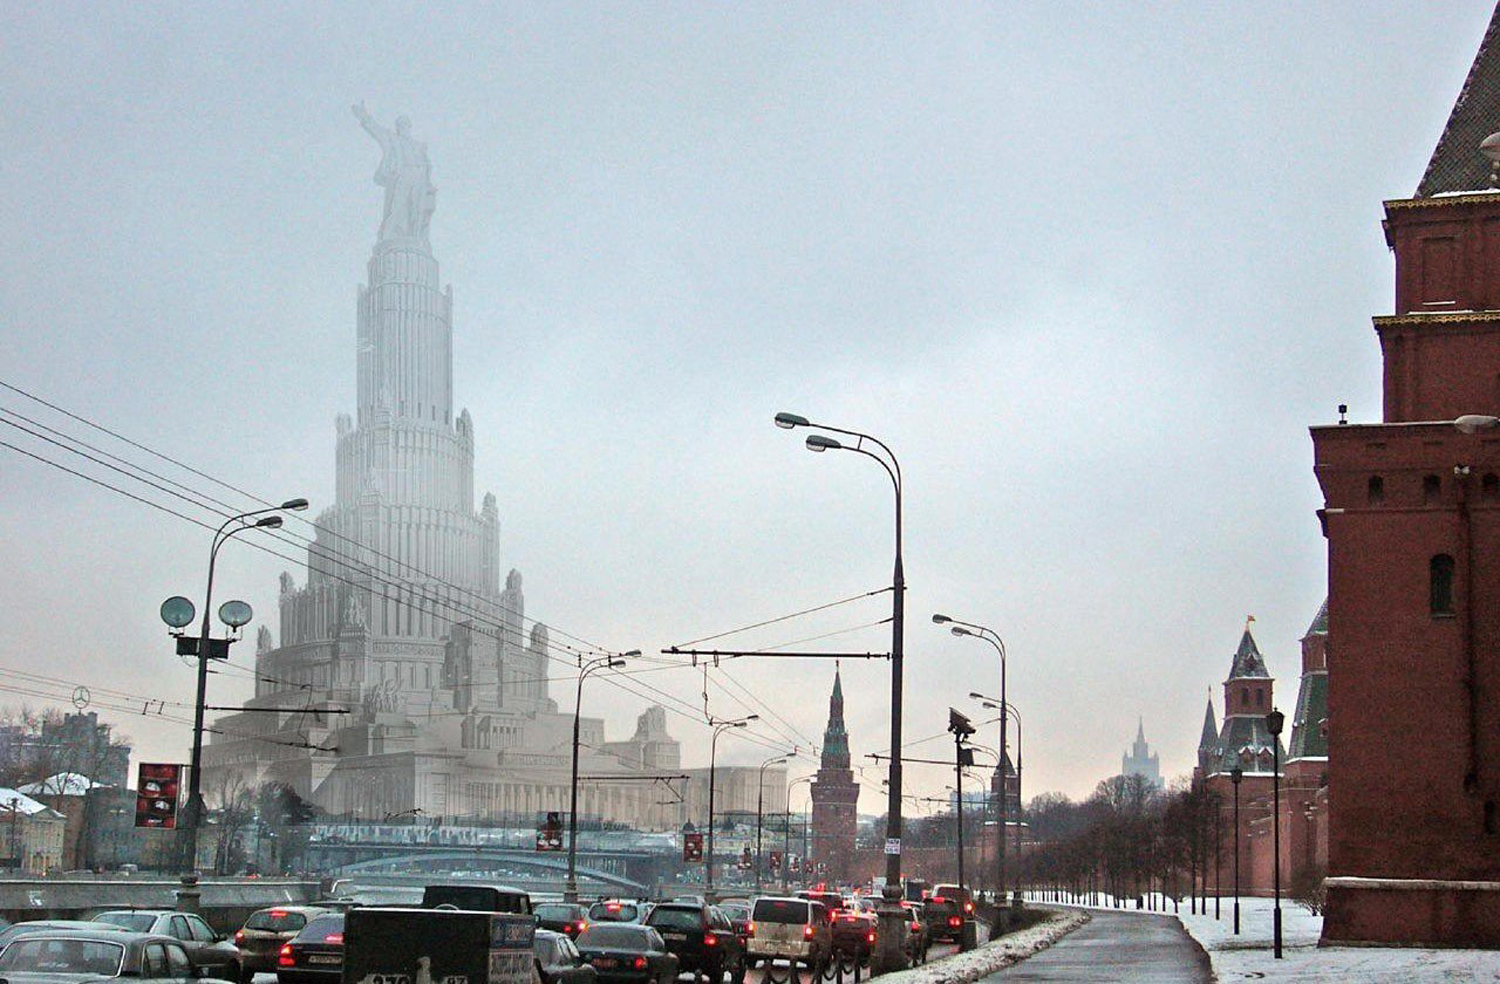 москва 2012 год фото